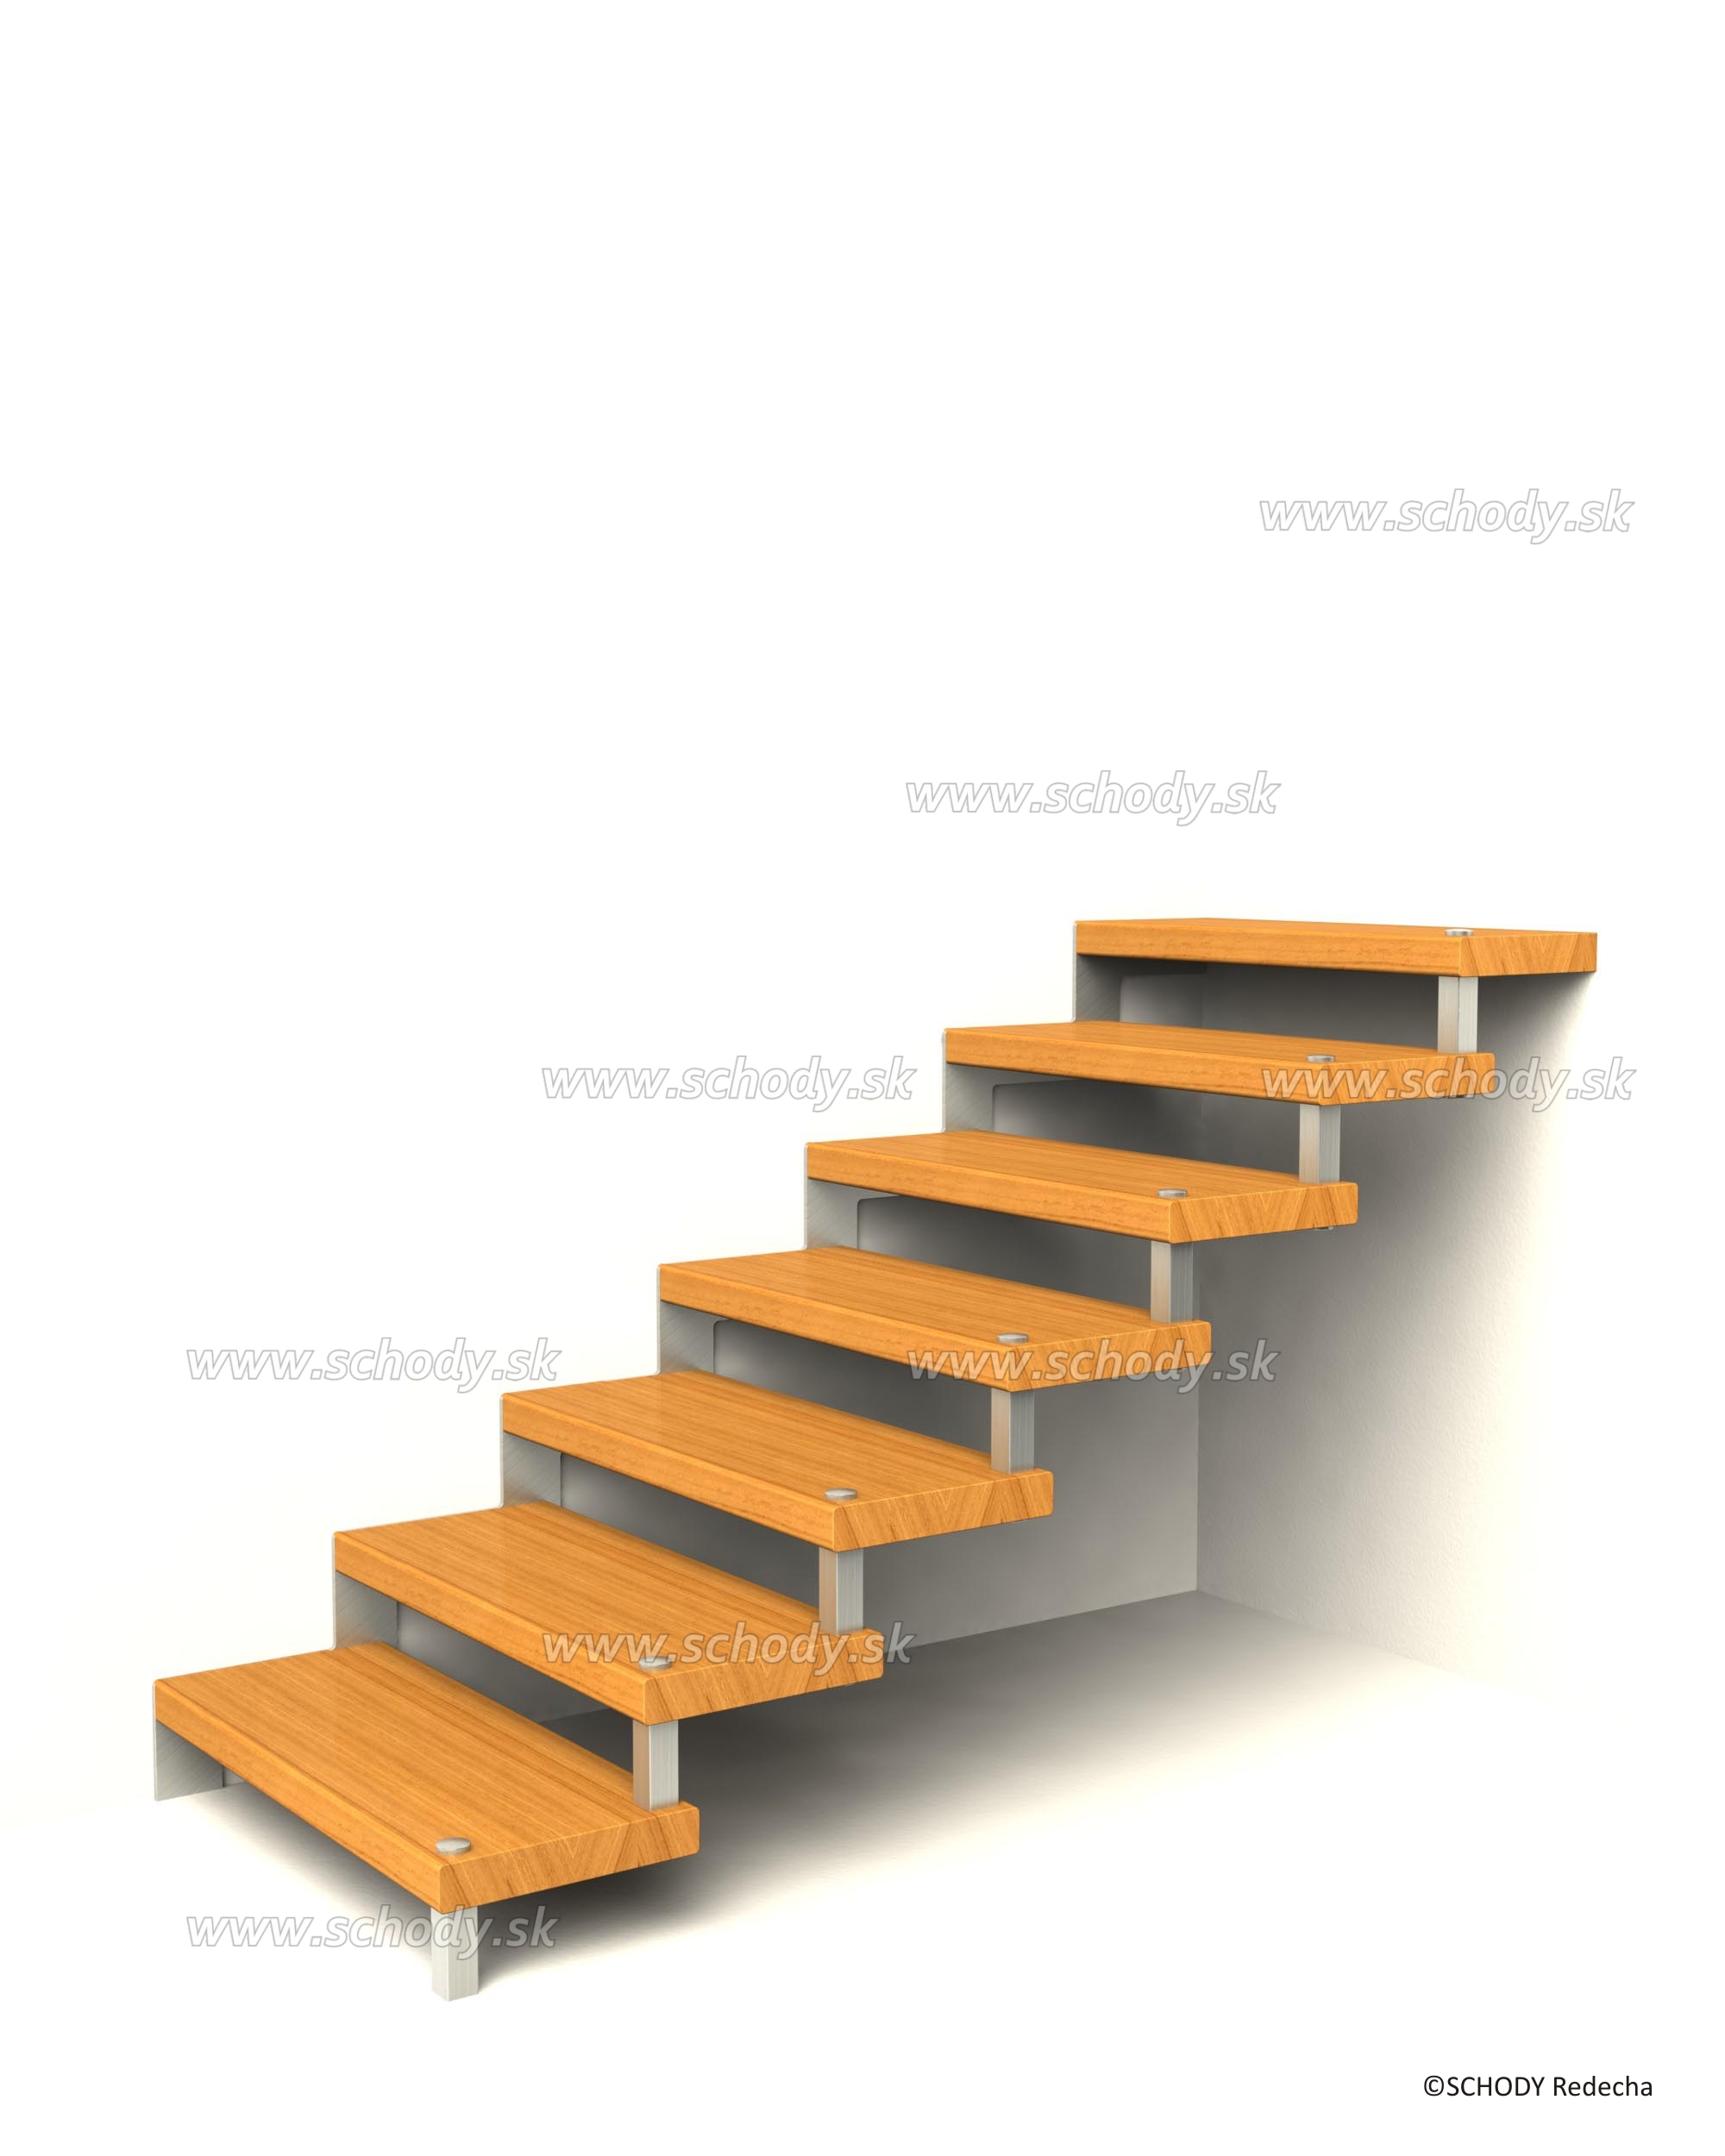 svornikove schody VIII22